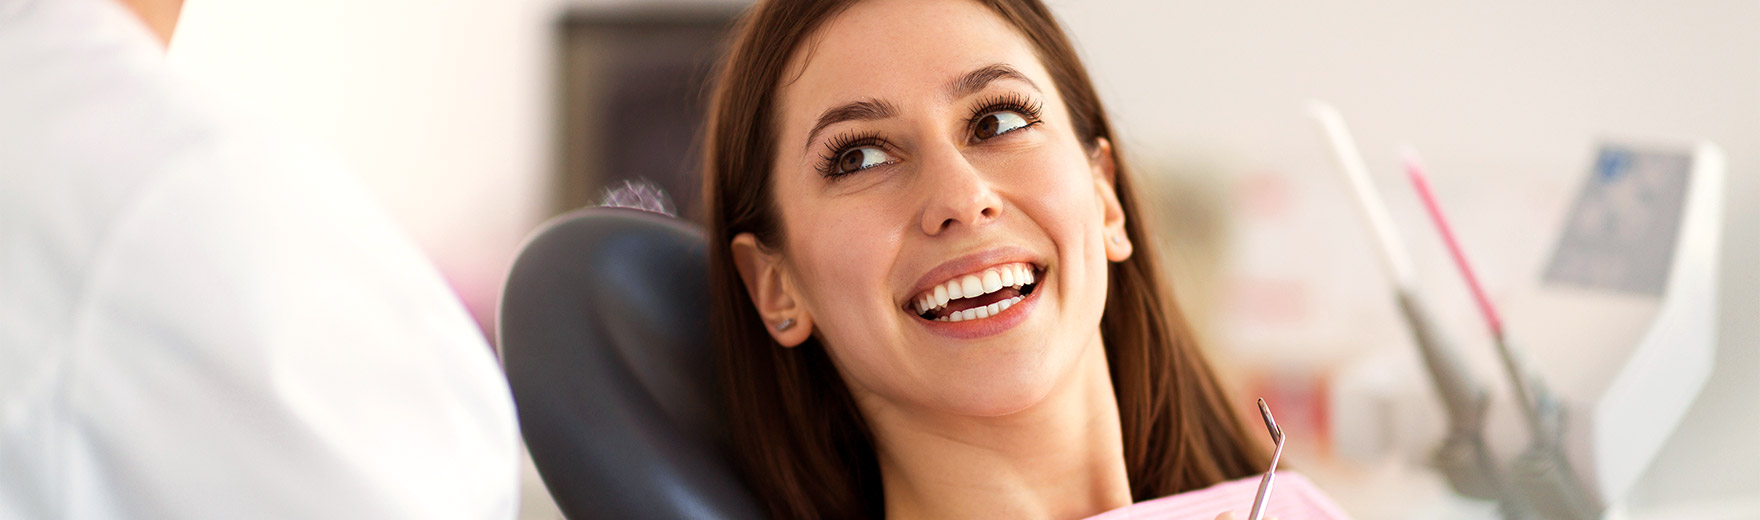 Zahnarztpraxis Lünen: Zahnreinigung, Zahnimplantat, Zahnersatz